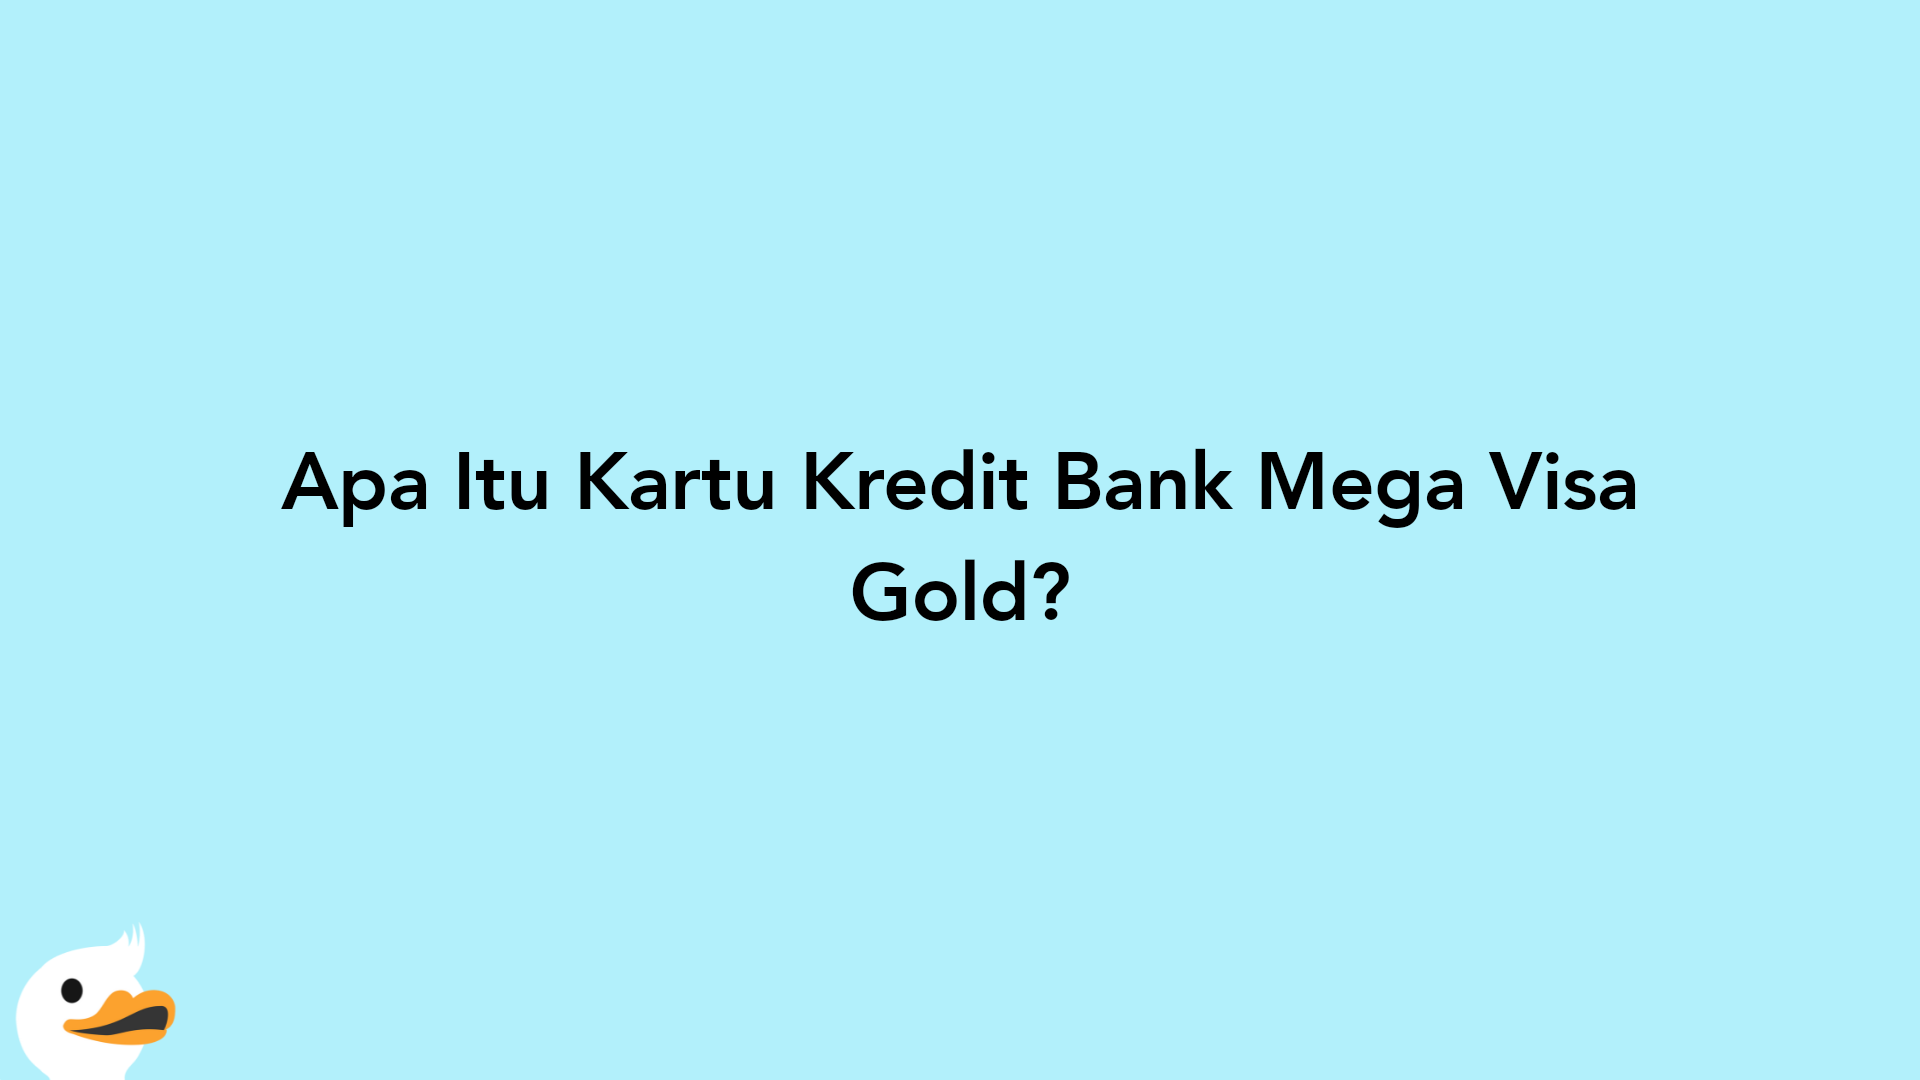 Apa Itu Kartu Kredit Bank Mega Visa Gold?